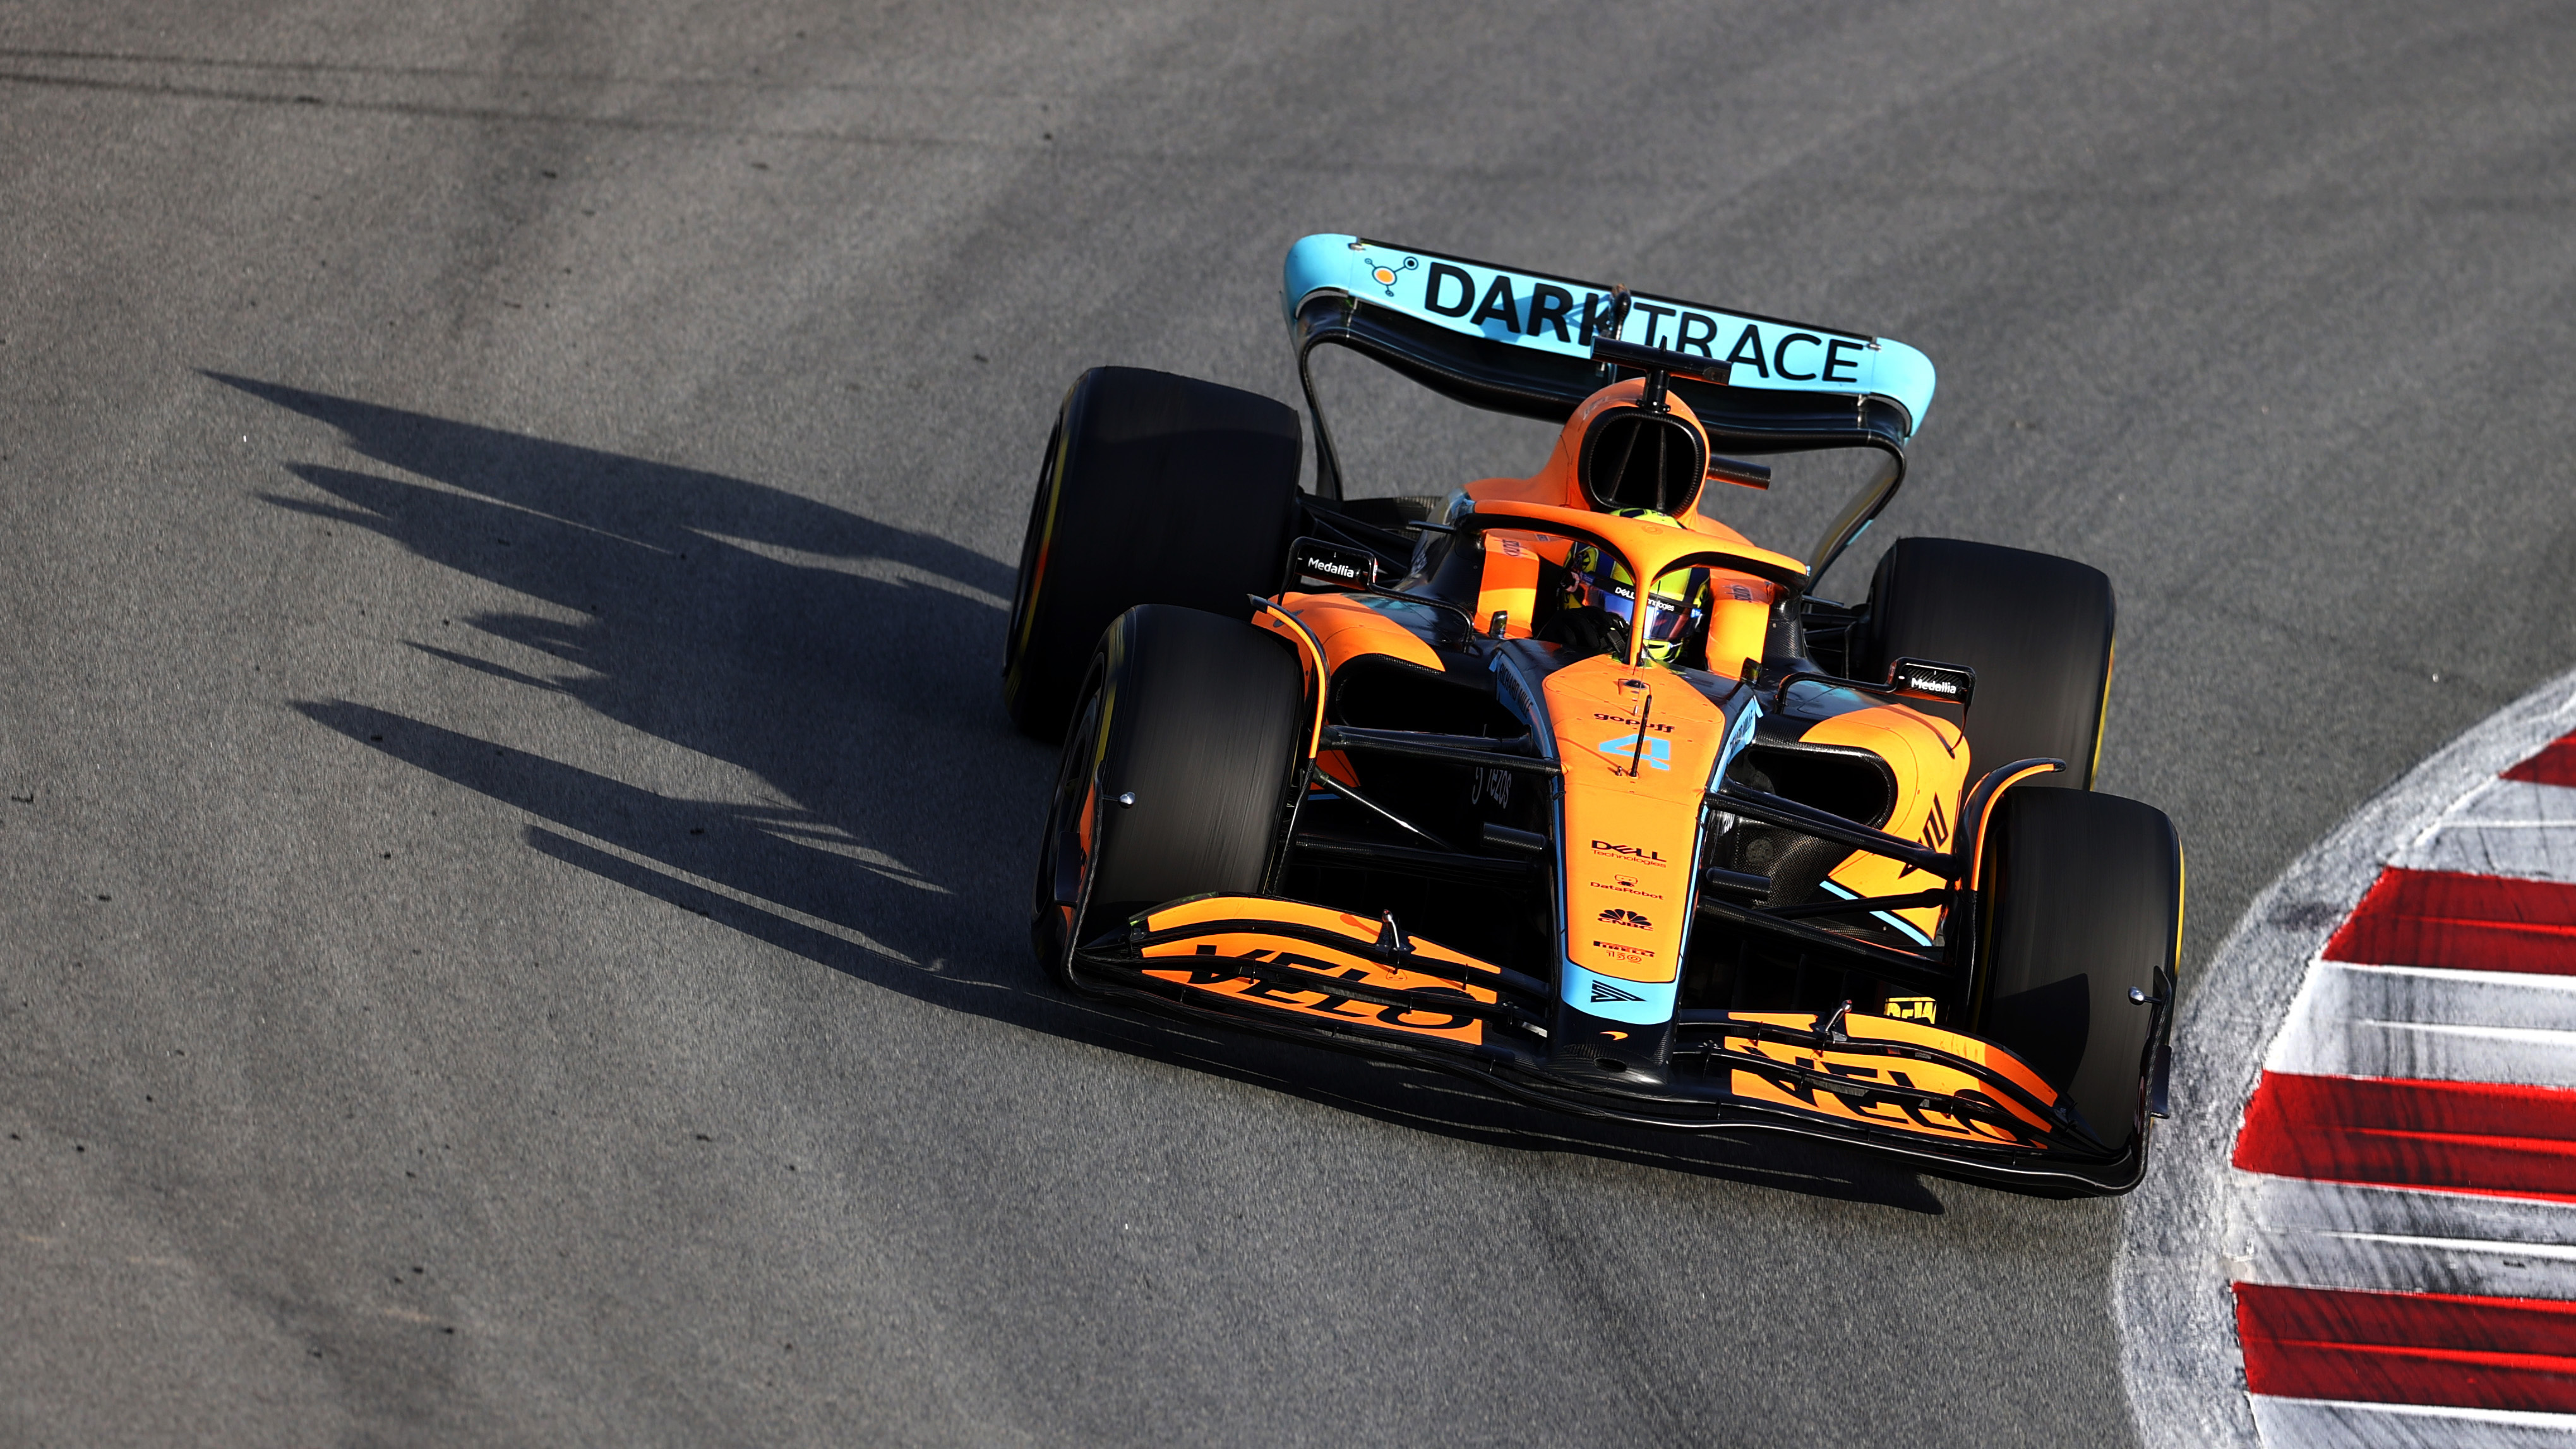 f1季前测试首日:兰多·诺里斯做出最快圈,法拉利f1车队里程霸榜